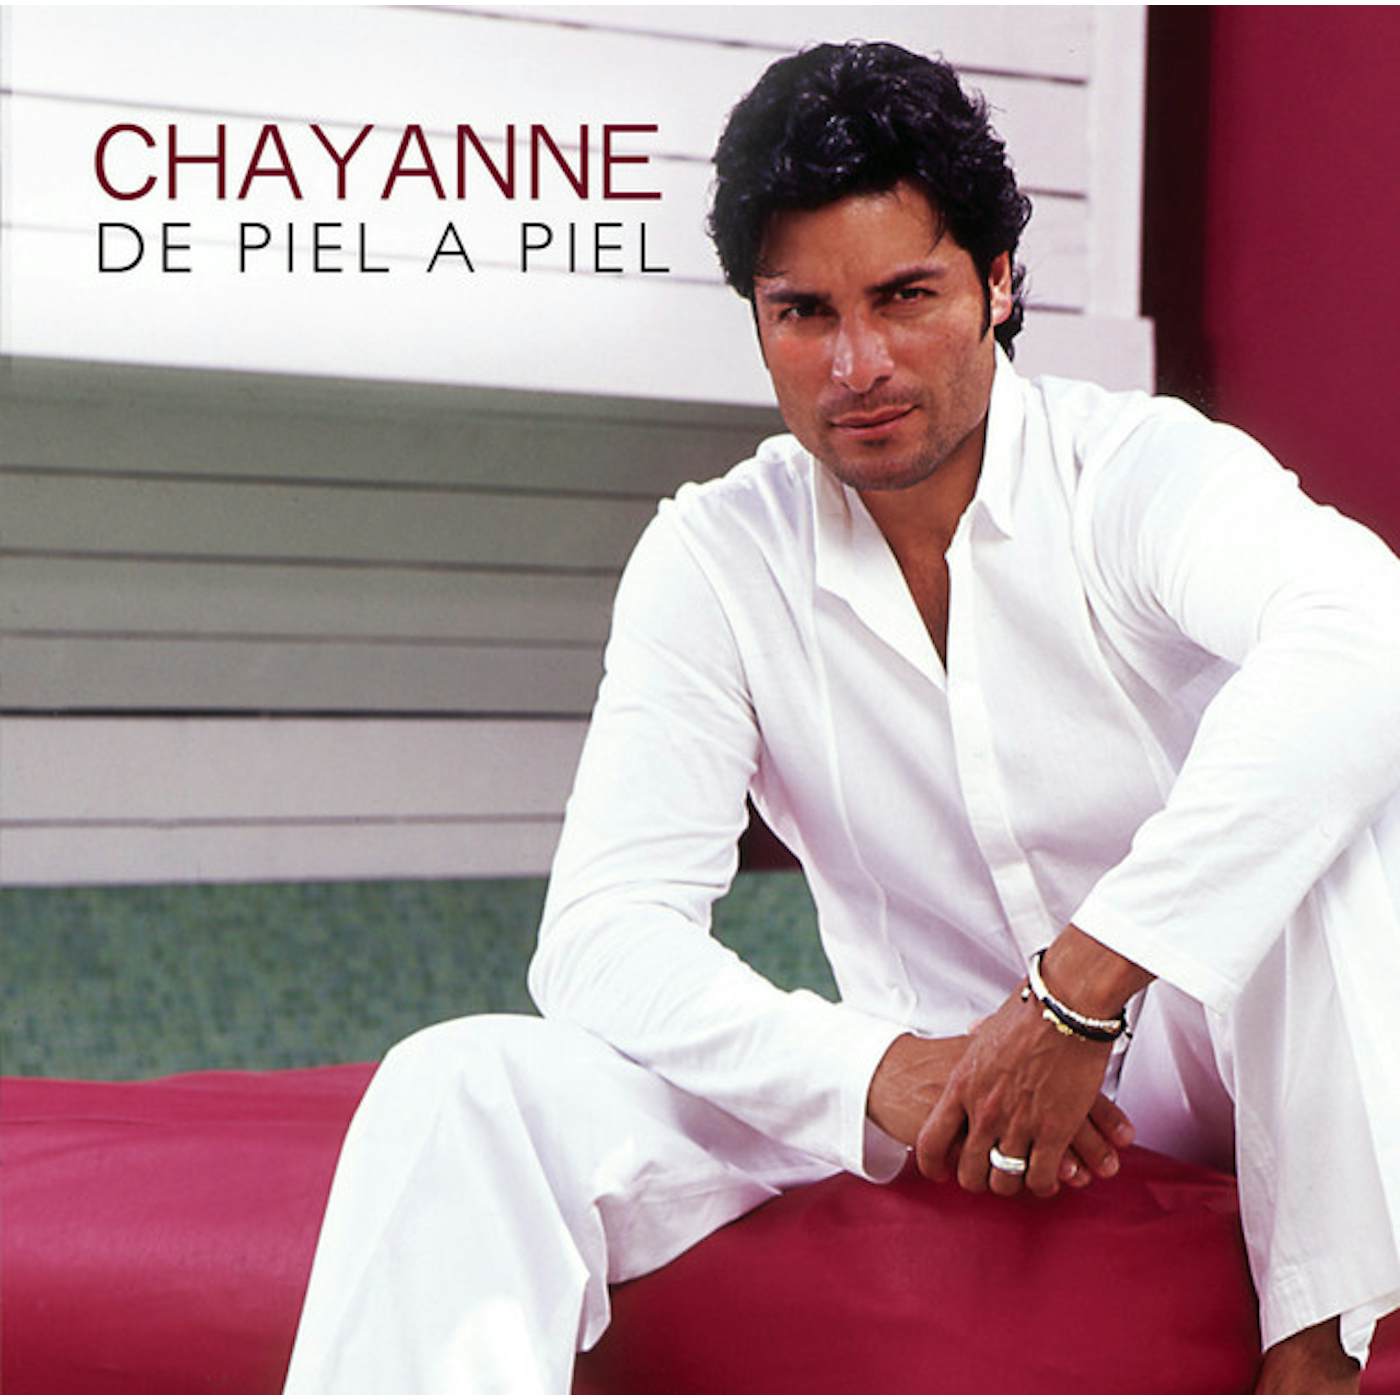 Chayanne DE PIEL A PIEL CD